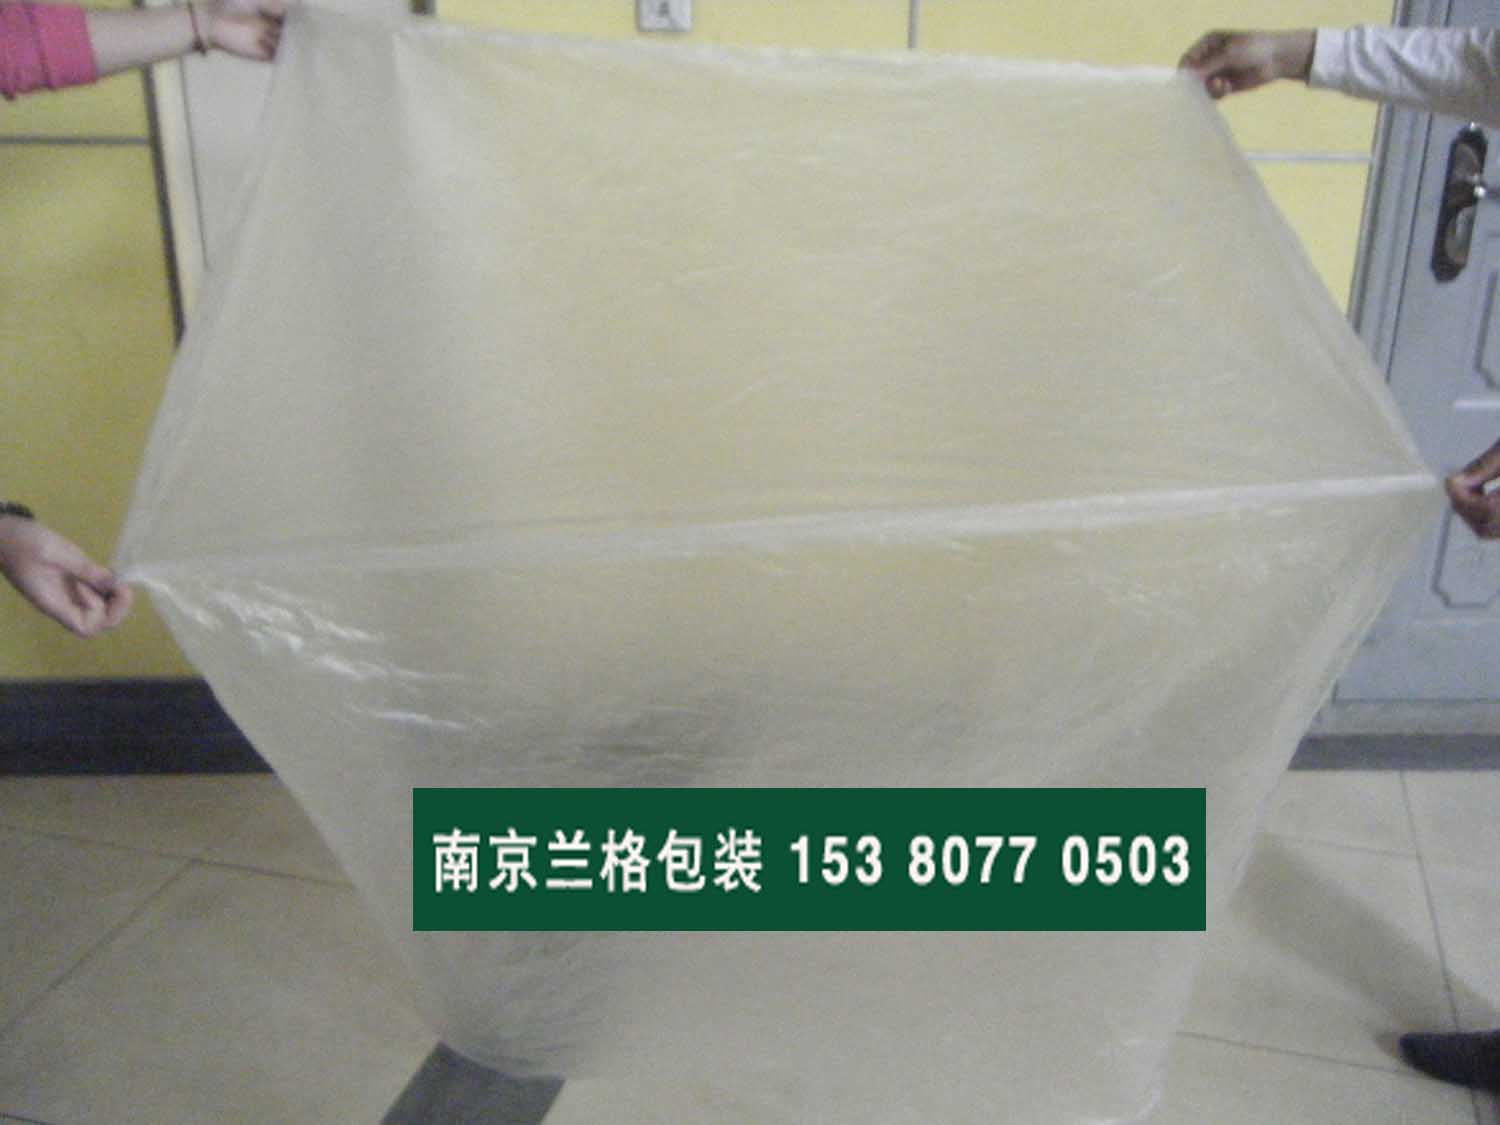 扬州塑料袋生产  冷却速度宜慢模具设冷料穴